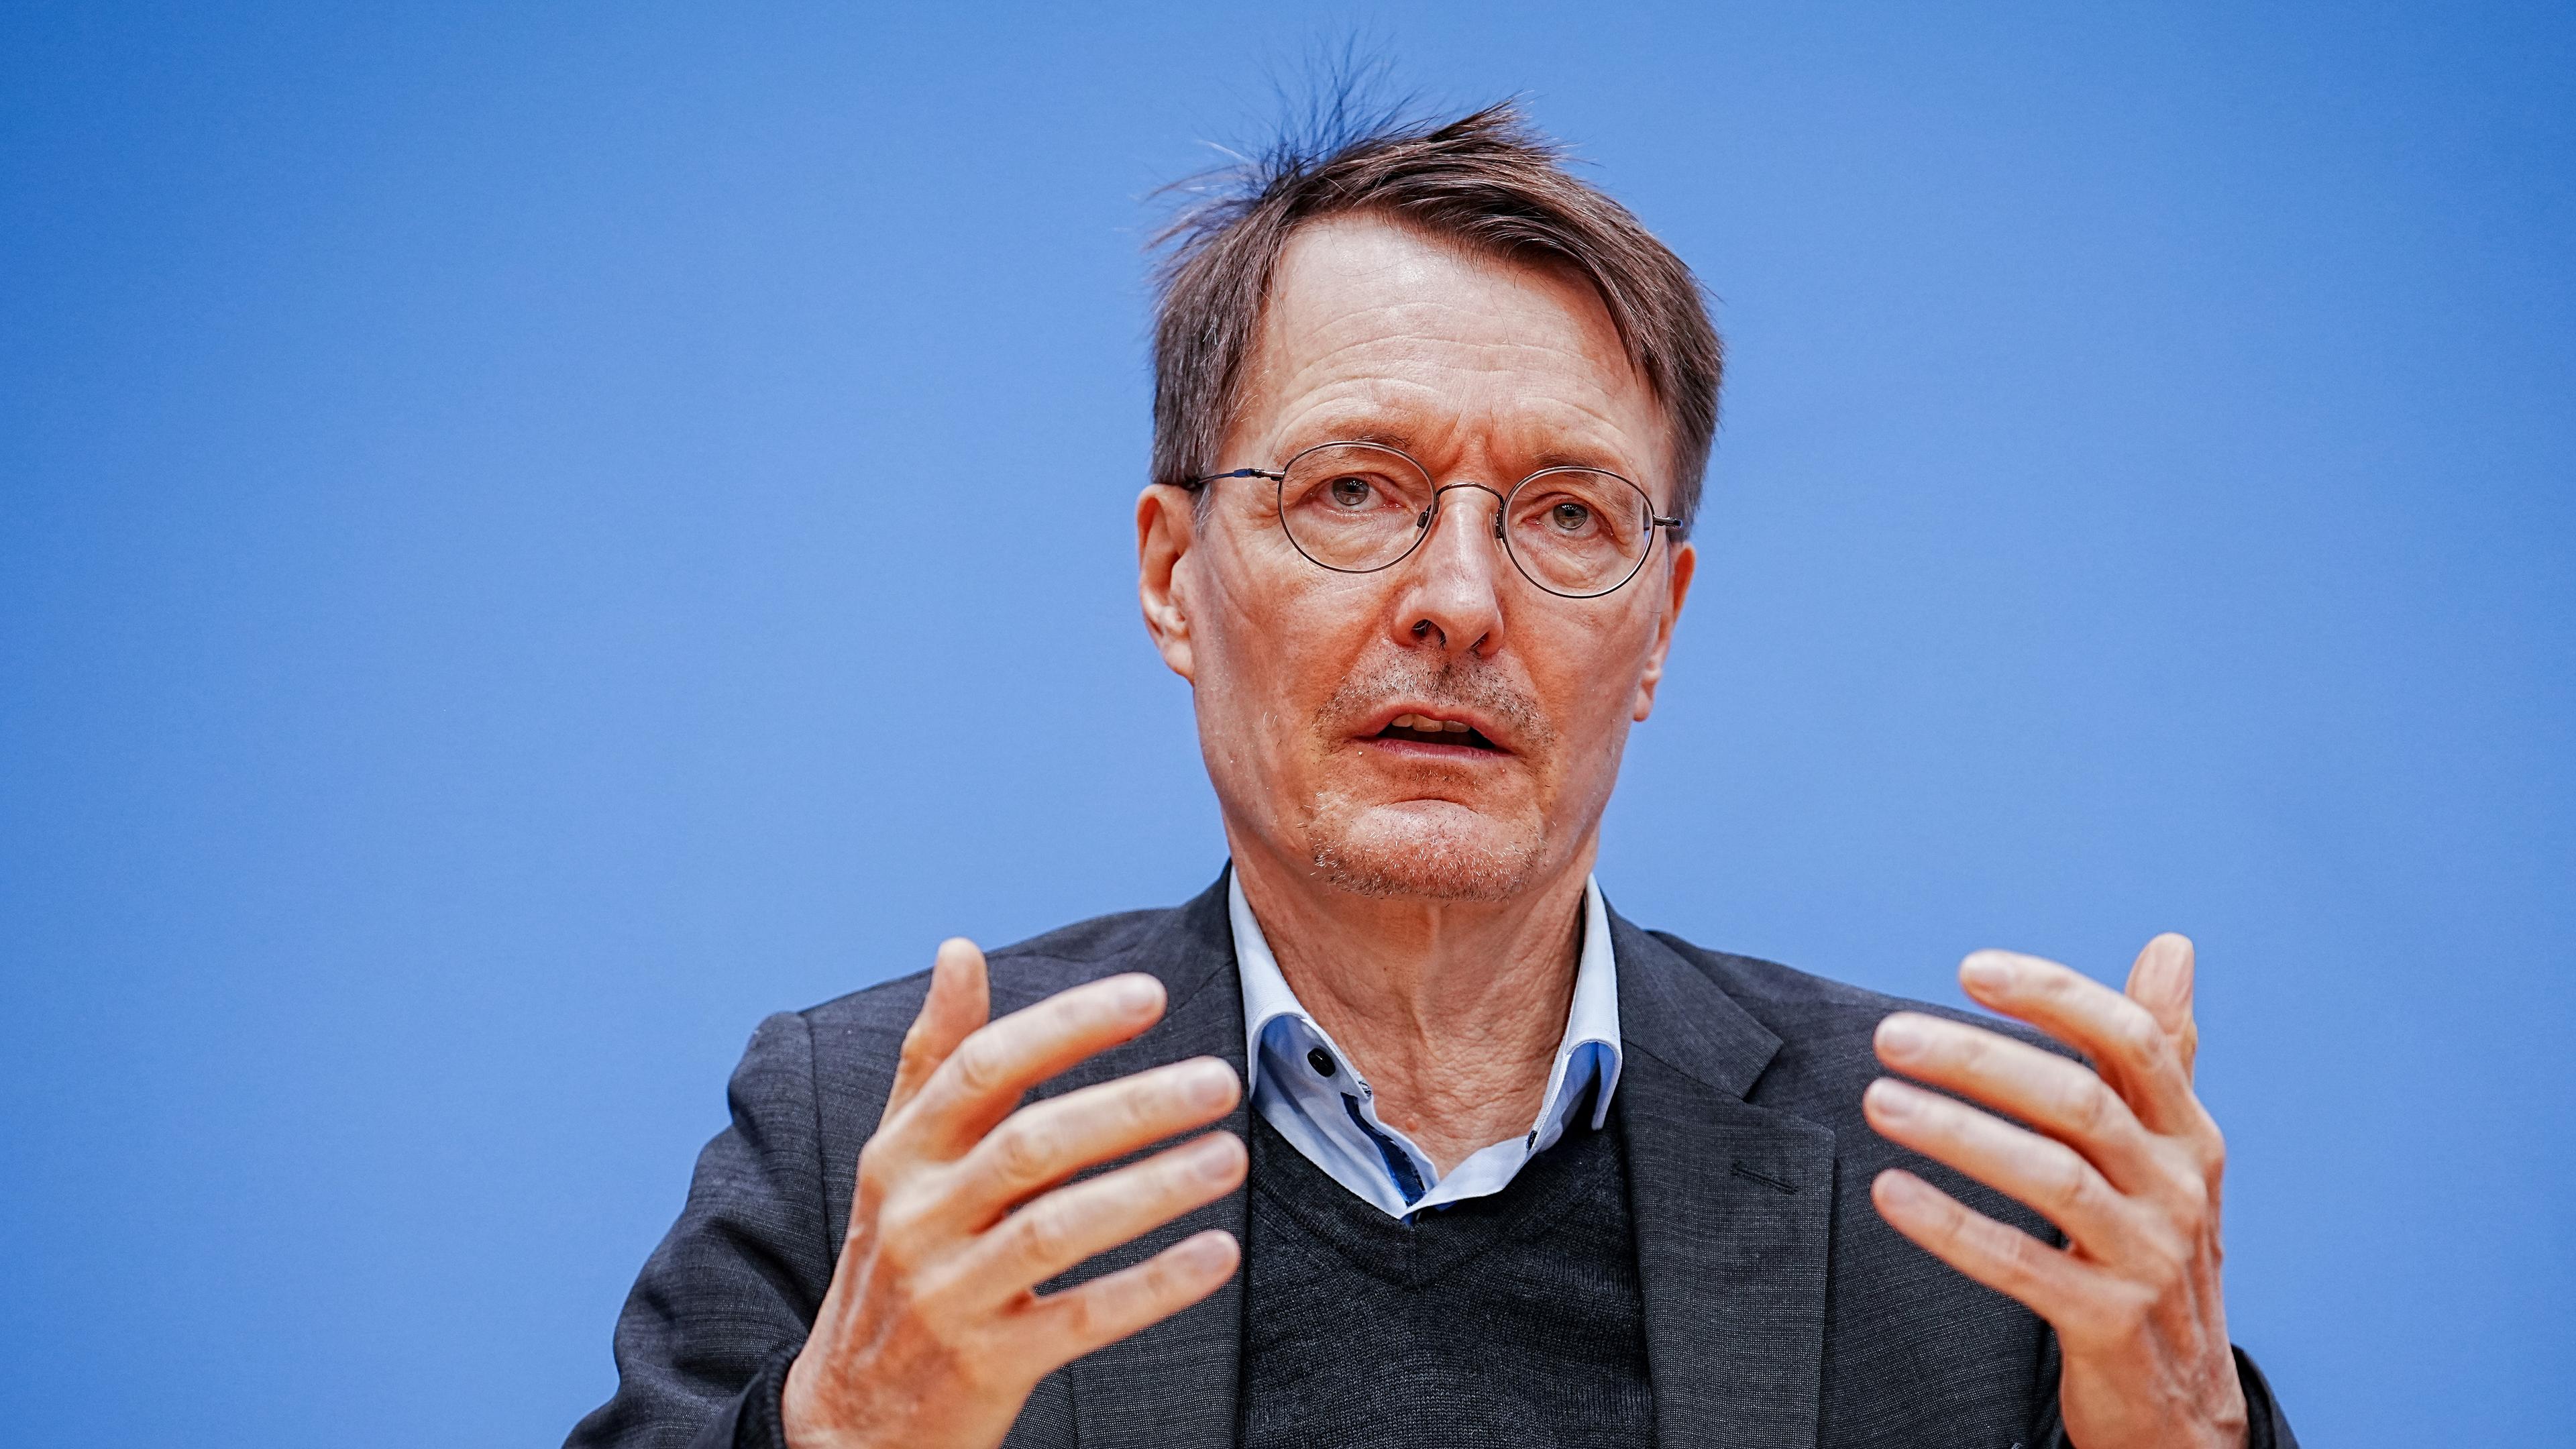 Gesundheitsminister Karl Lauterbach (SPD), aufgenommen am 06.12.2022 in Berlin